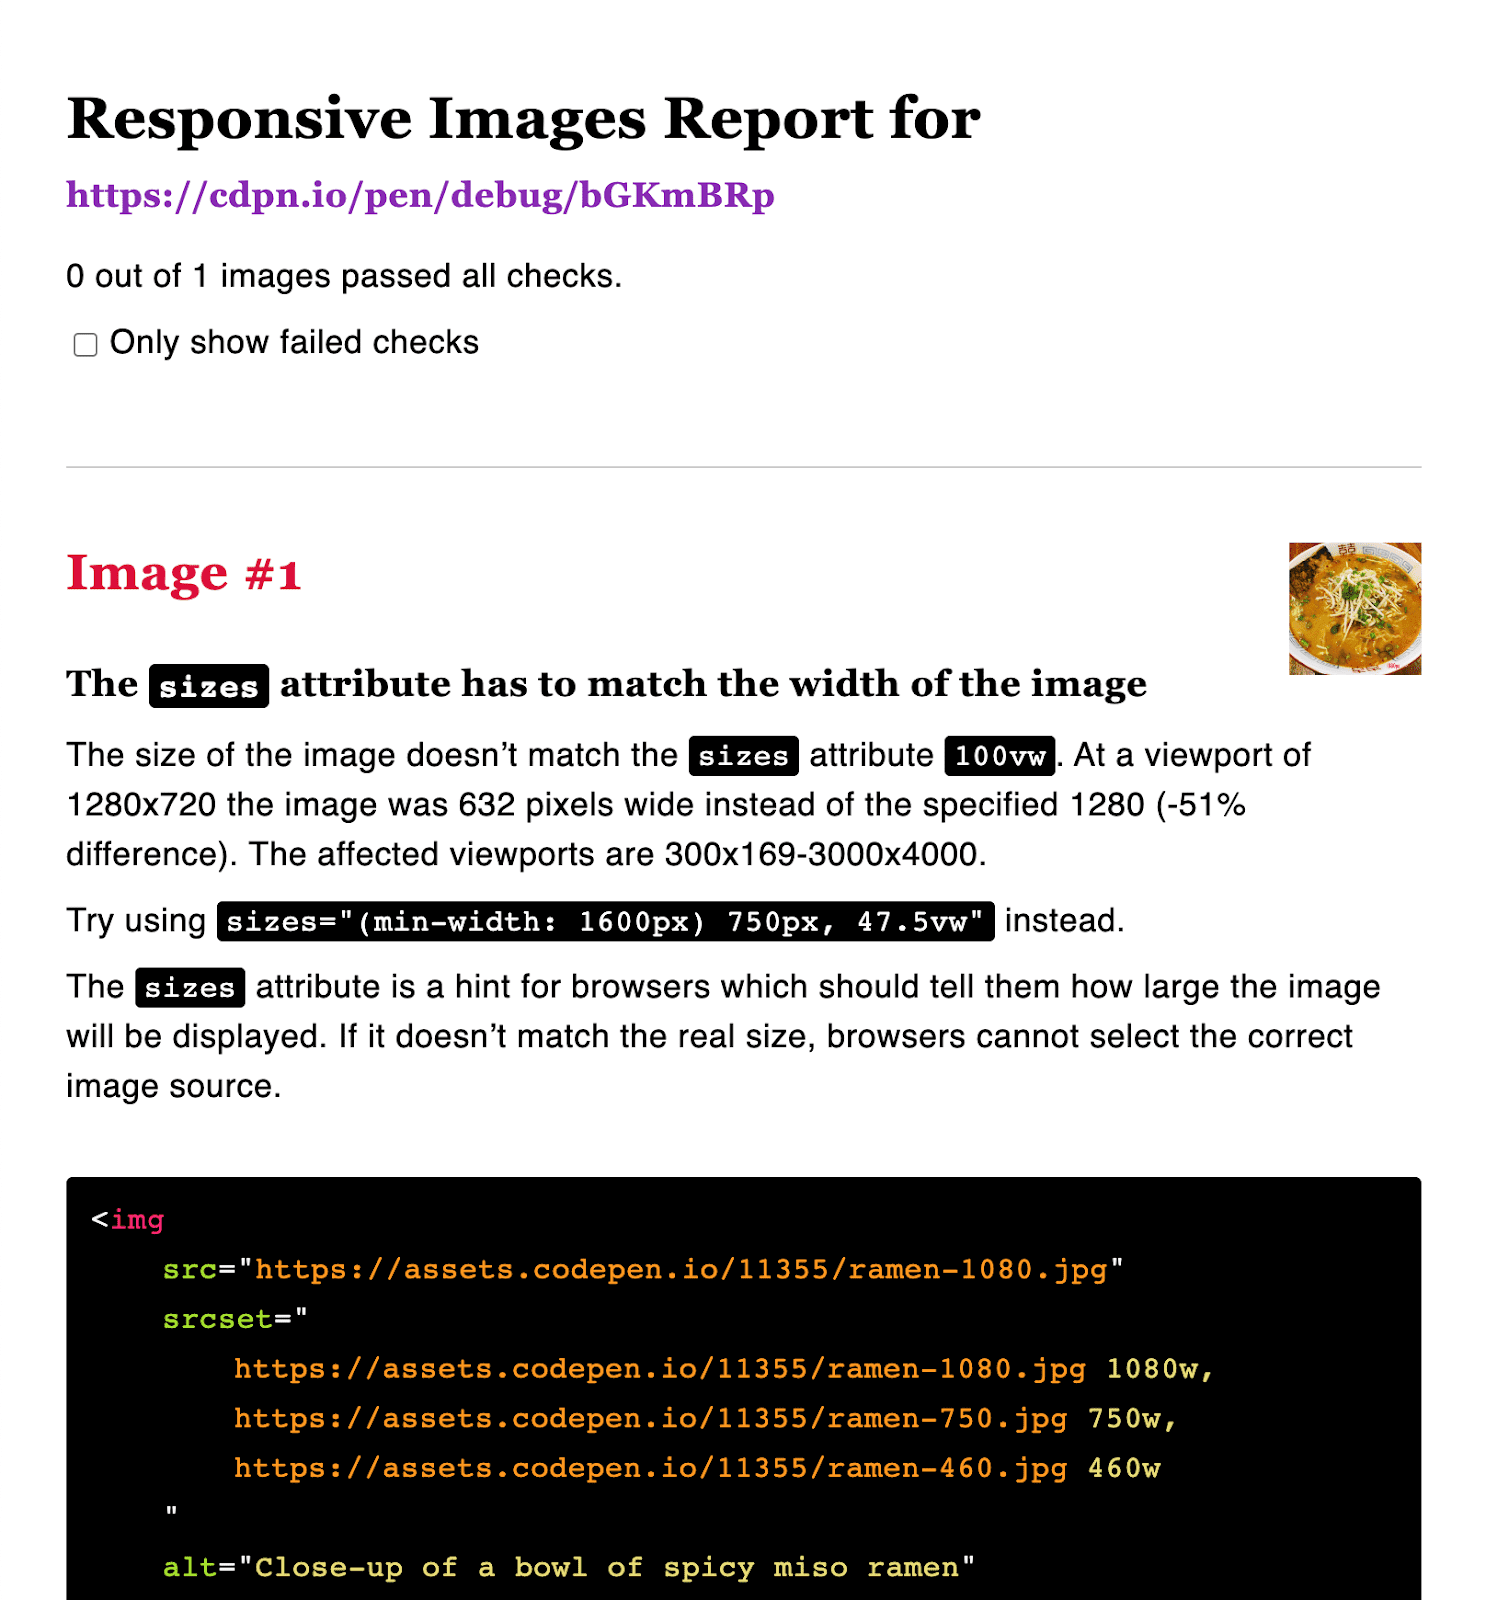 Relatório de imagem responsiva mostrando a incompatibilidade de tamanho/largura.